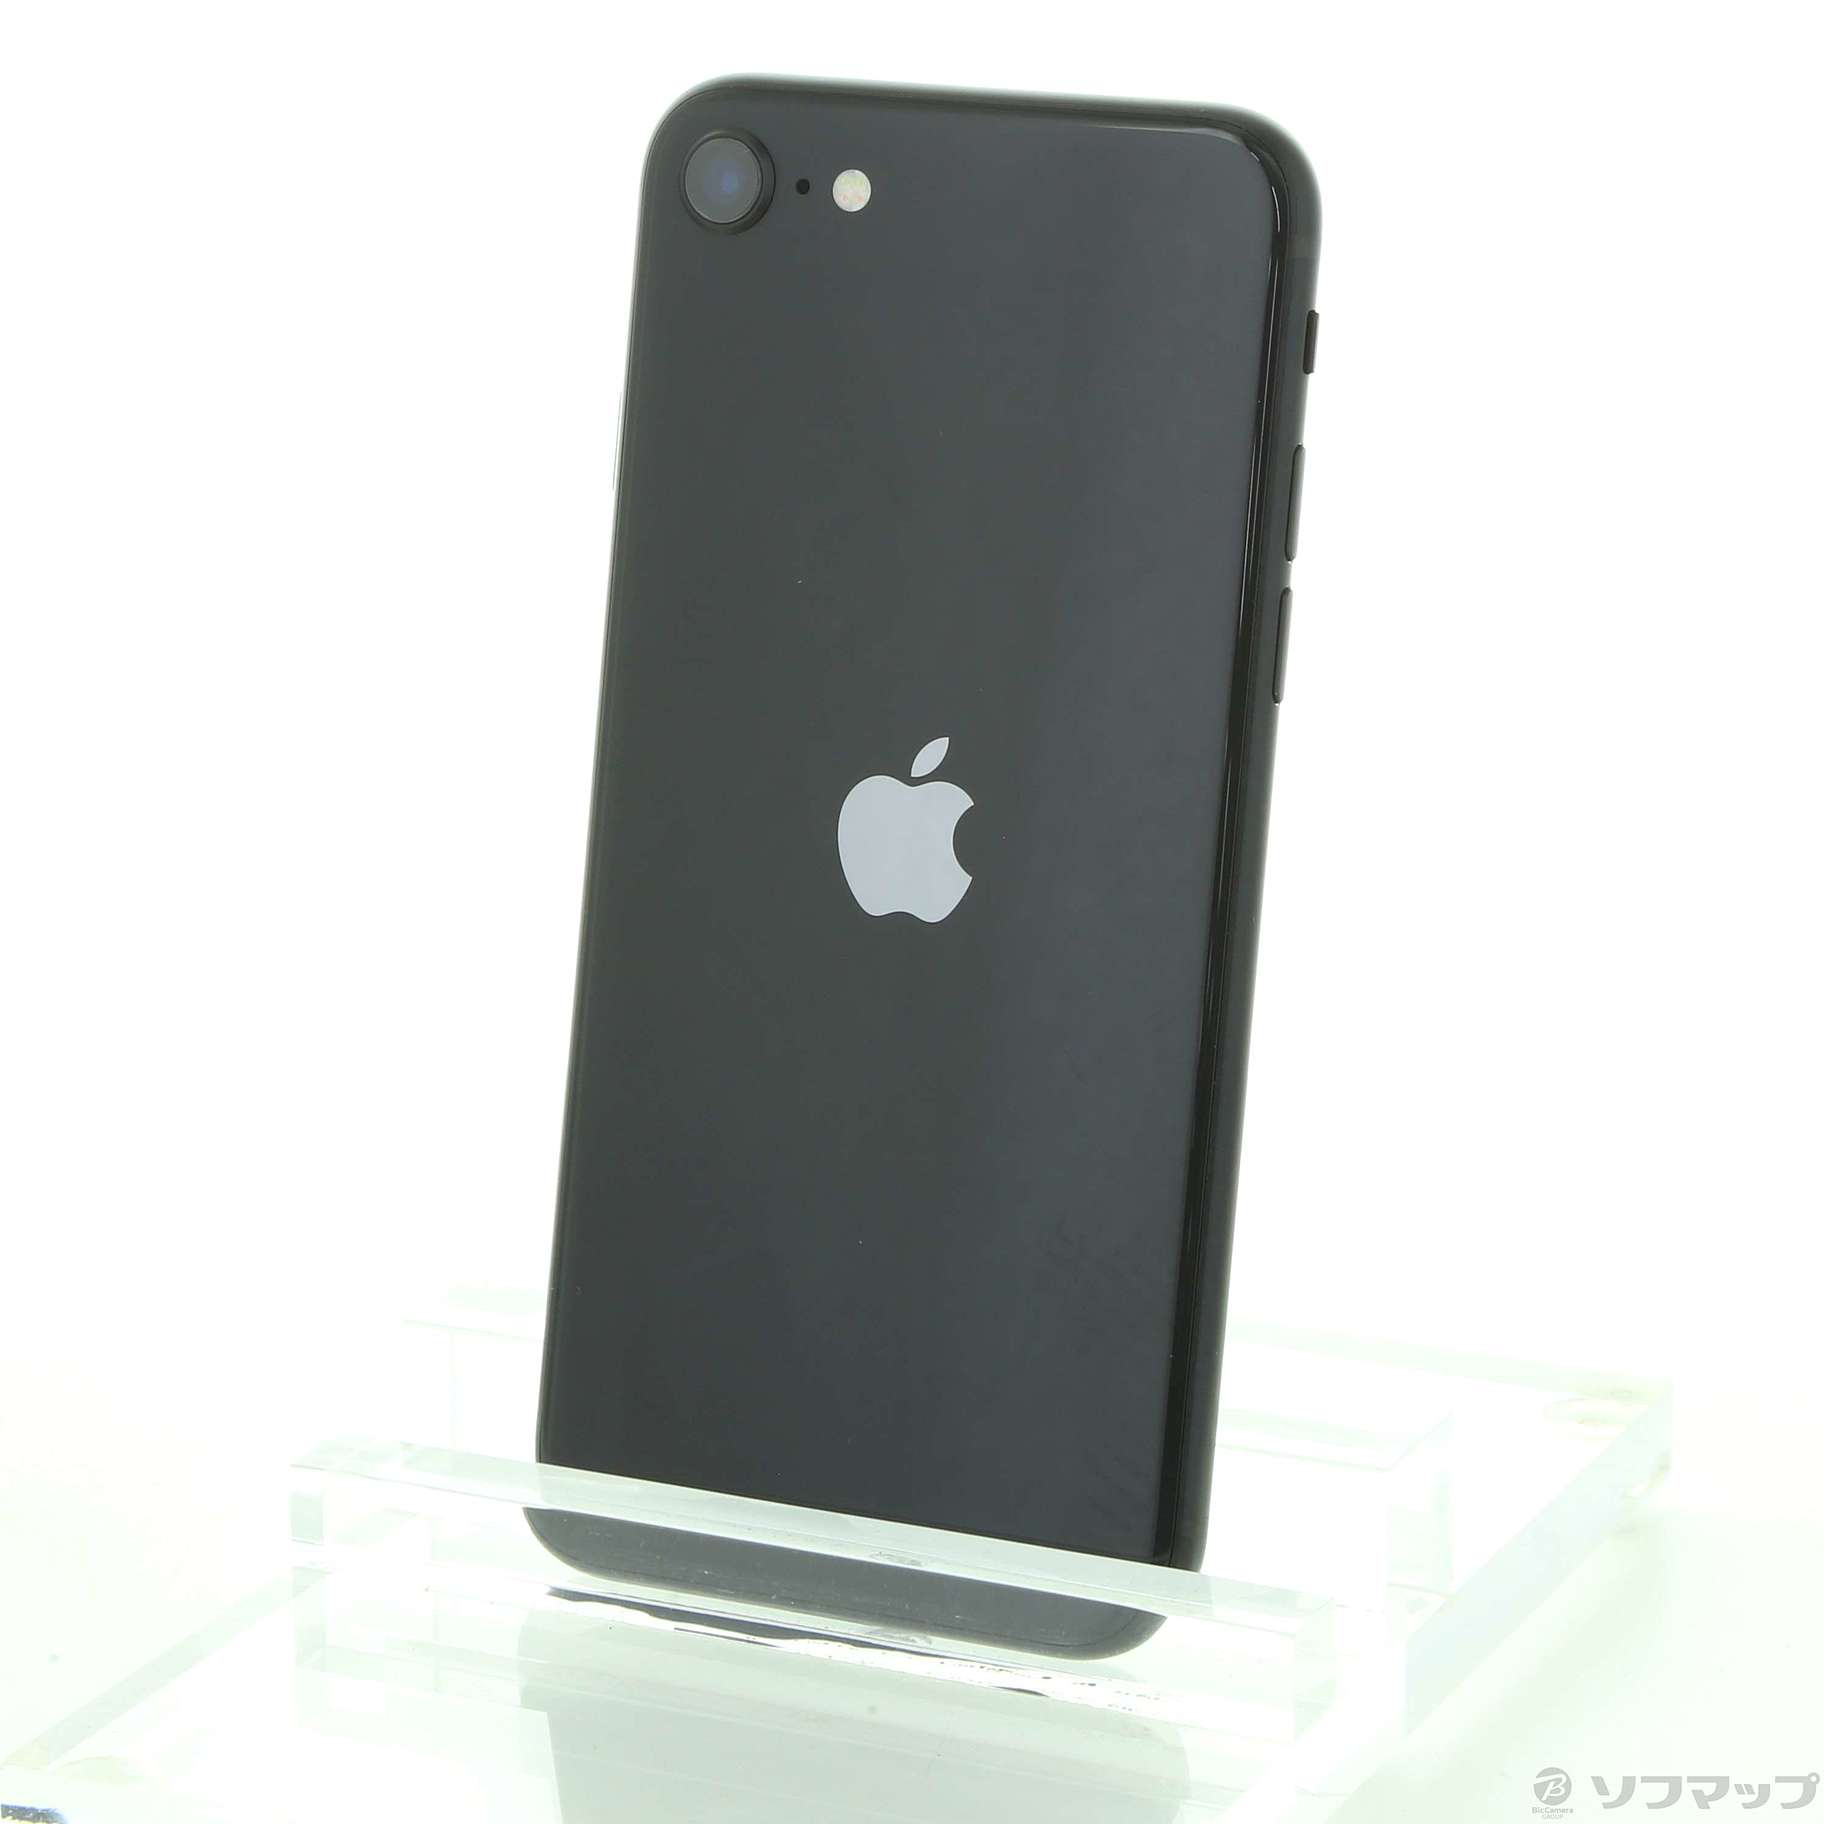 公式サイト iPhone SE第2世代 128GB SIM フリー31605 スマートフォン